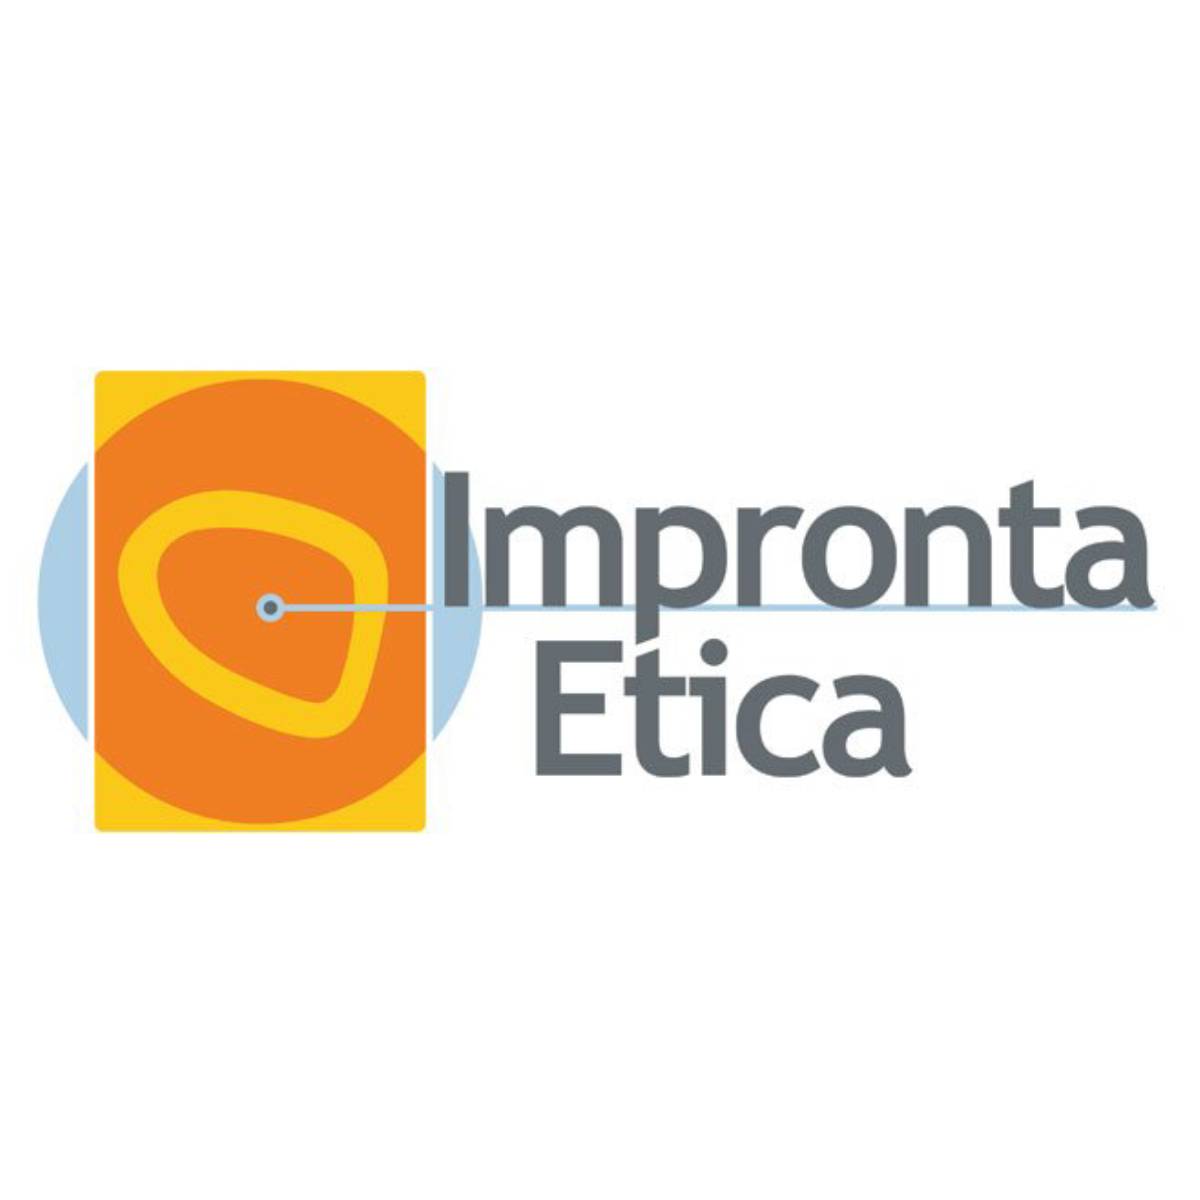 Impronta etica